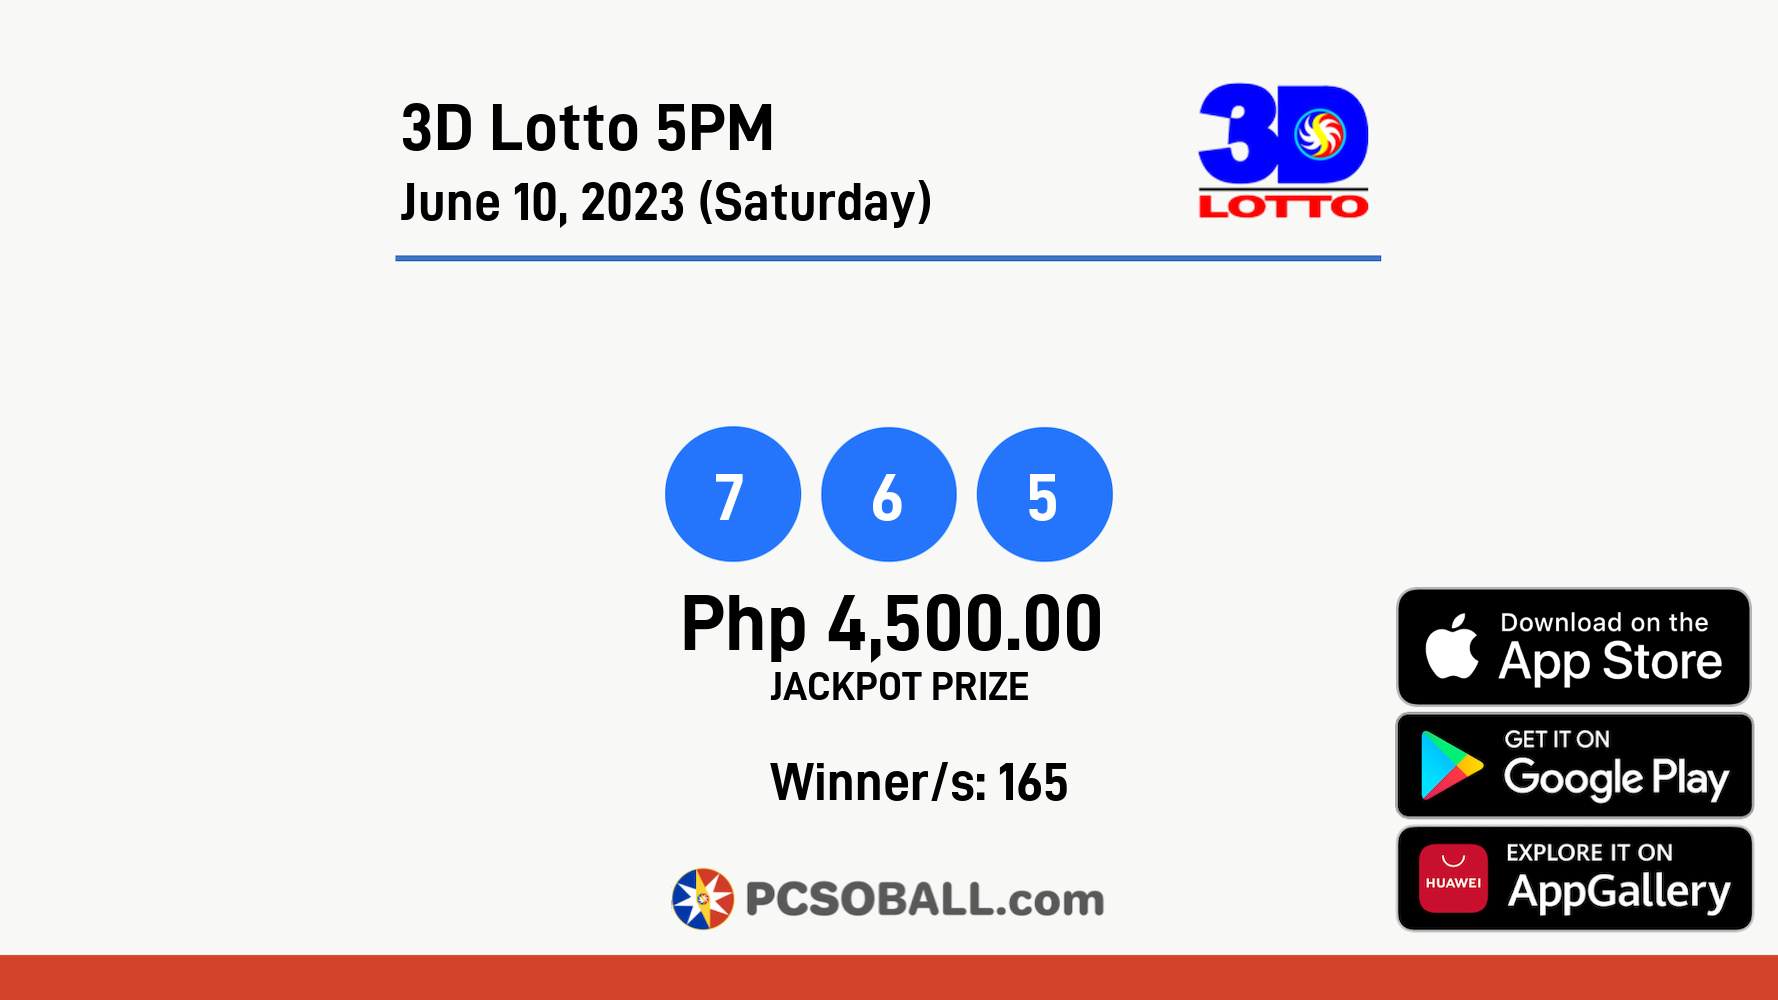 3D Lotto 5PM June 10, 2023 (Saturday) Result